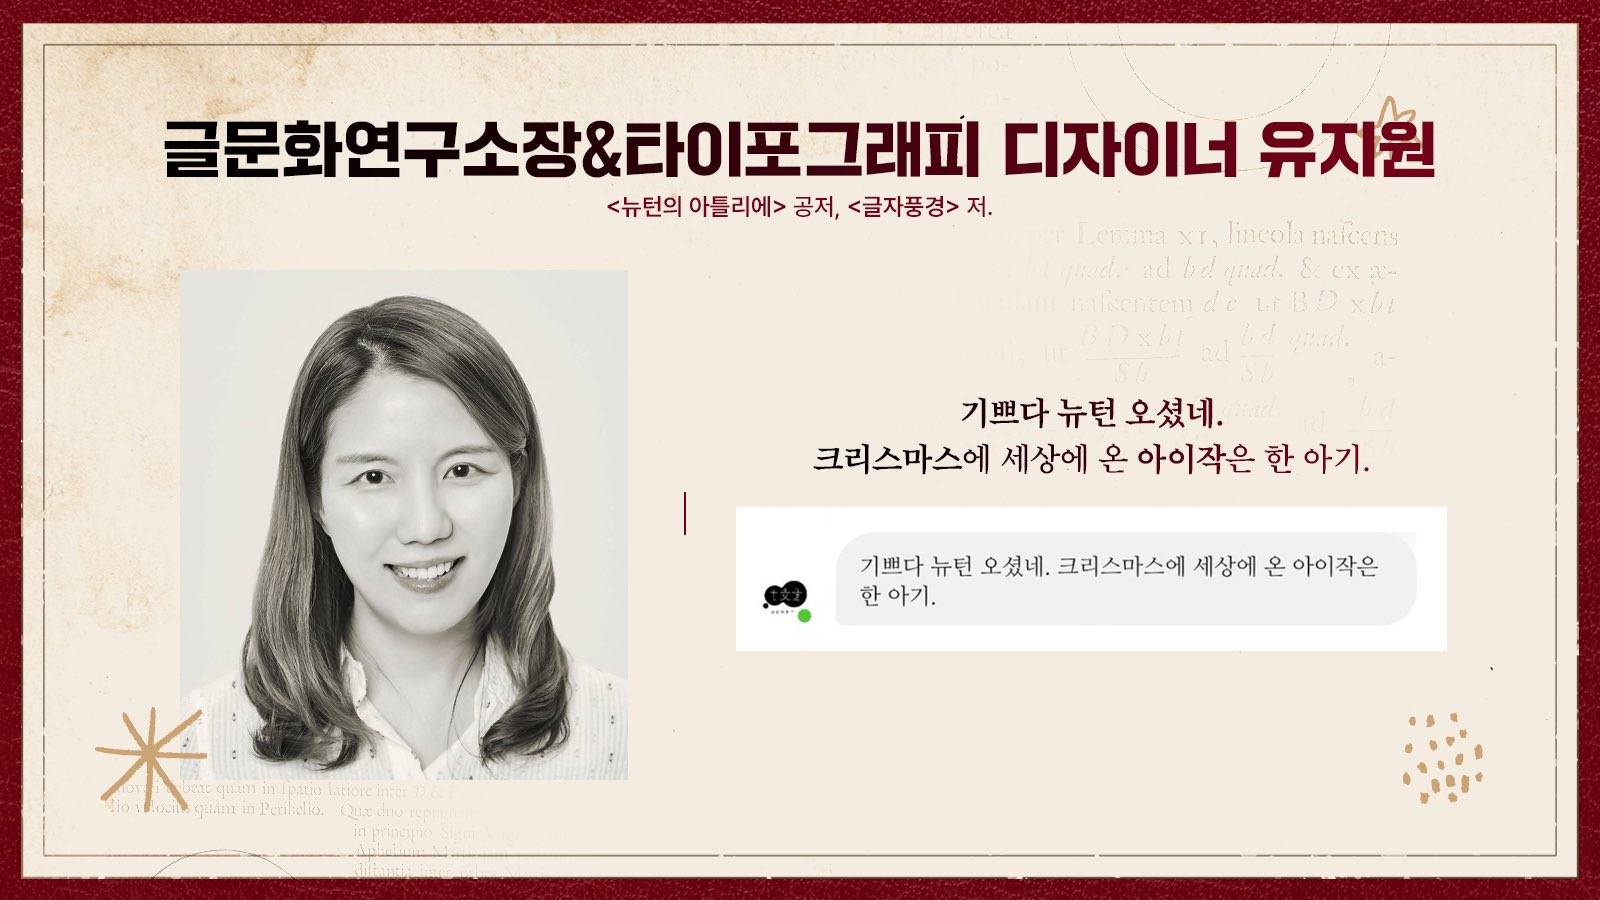 12월 서울 개최 예정인 아이작 뉴턴 생일카페 | 인스티즈